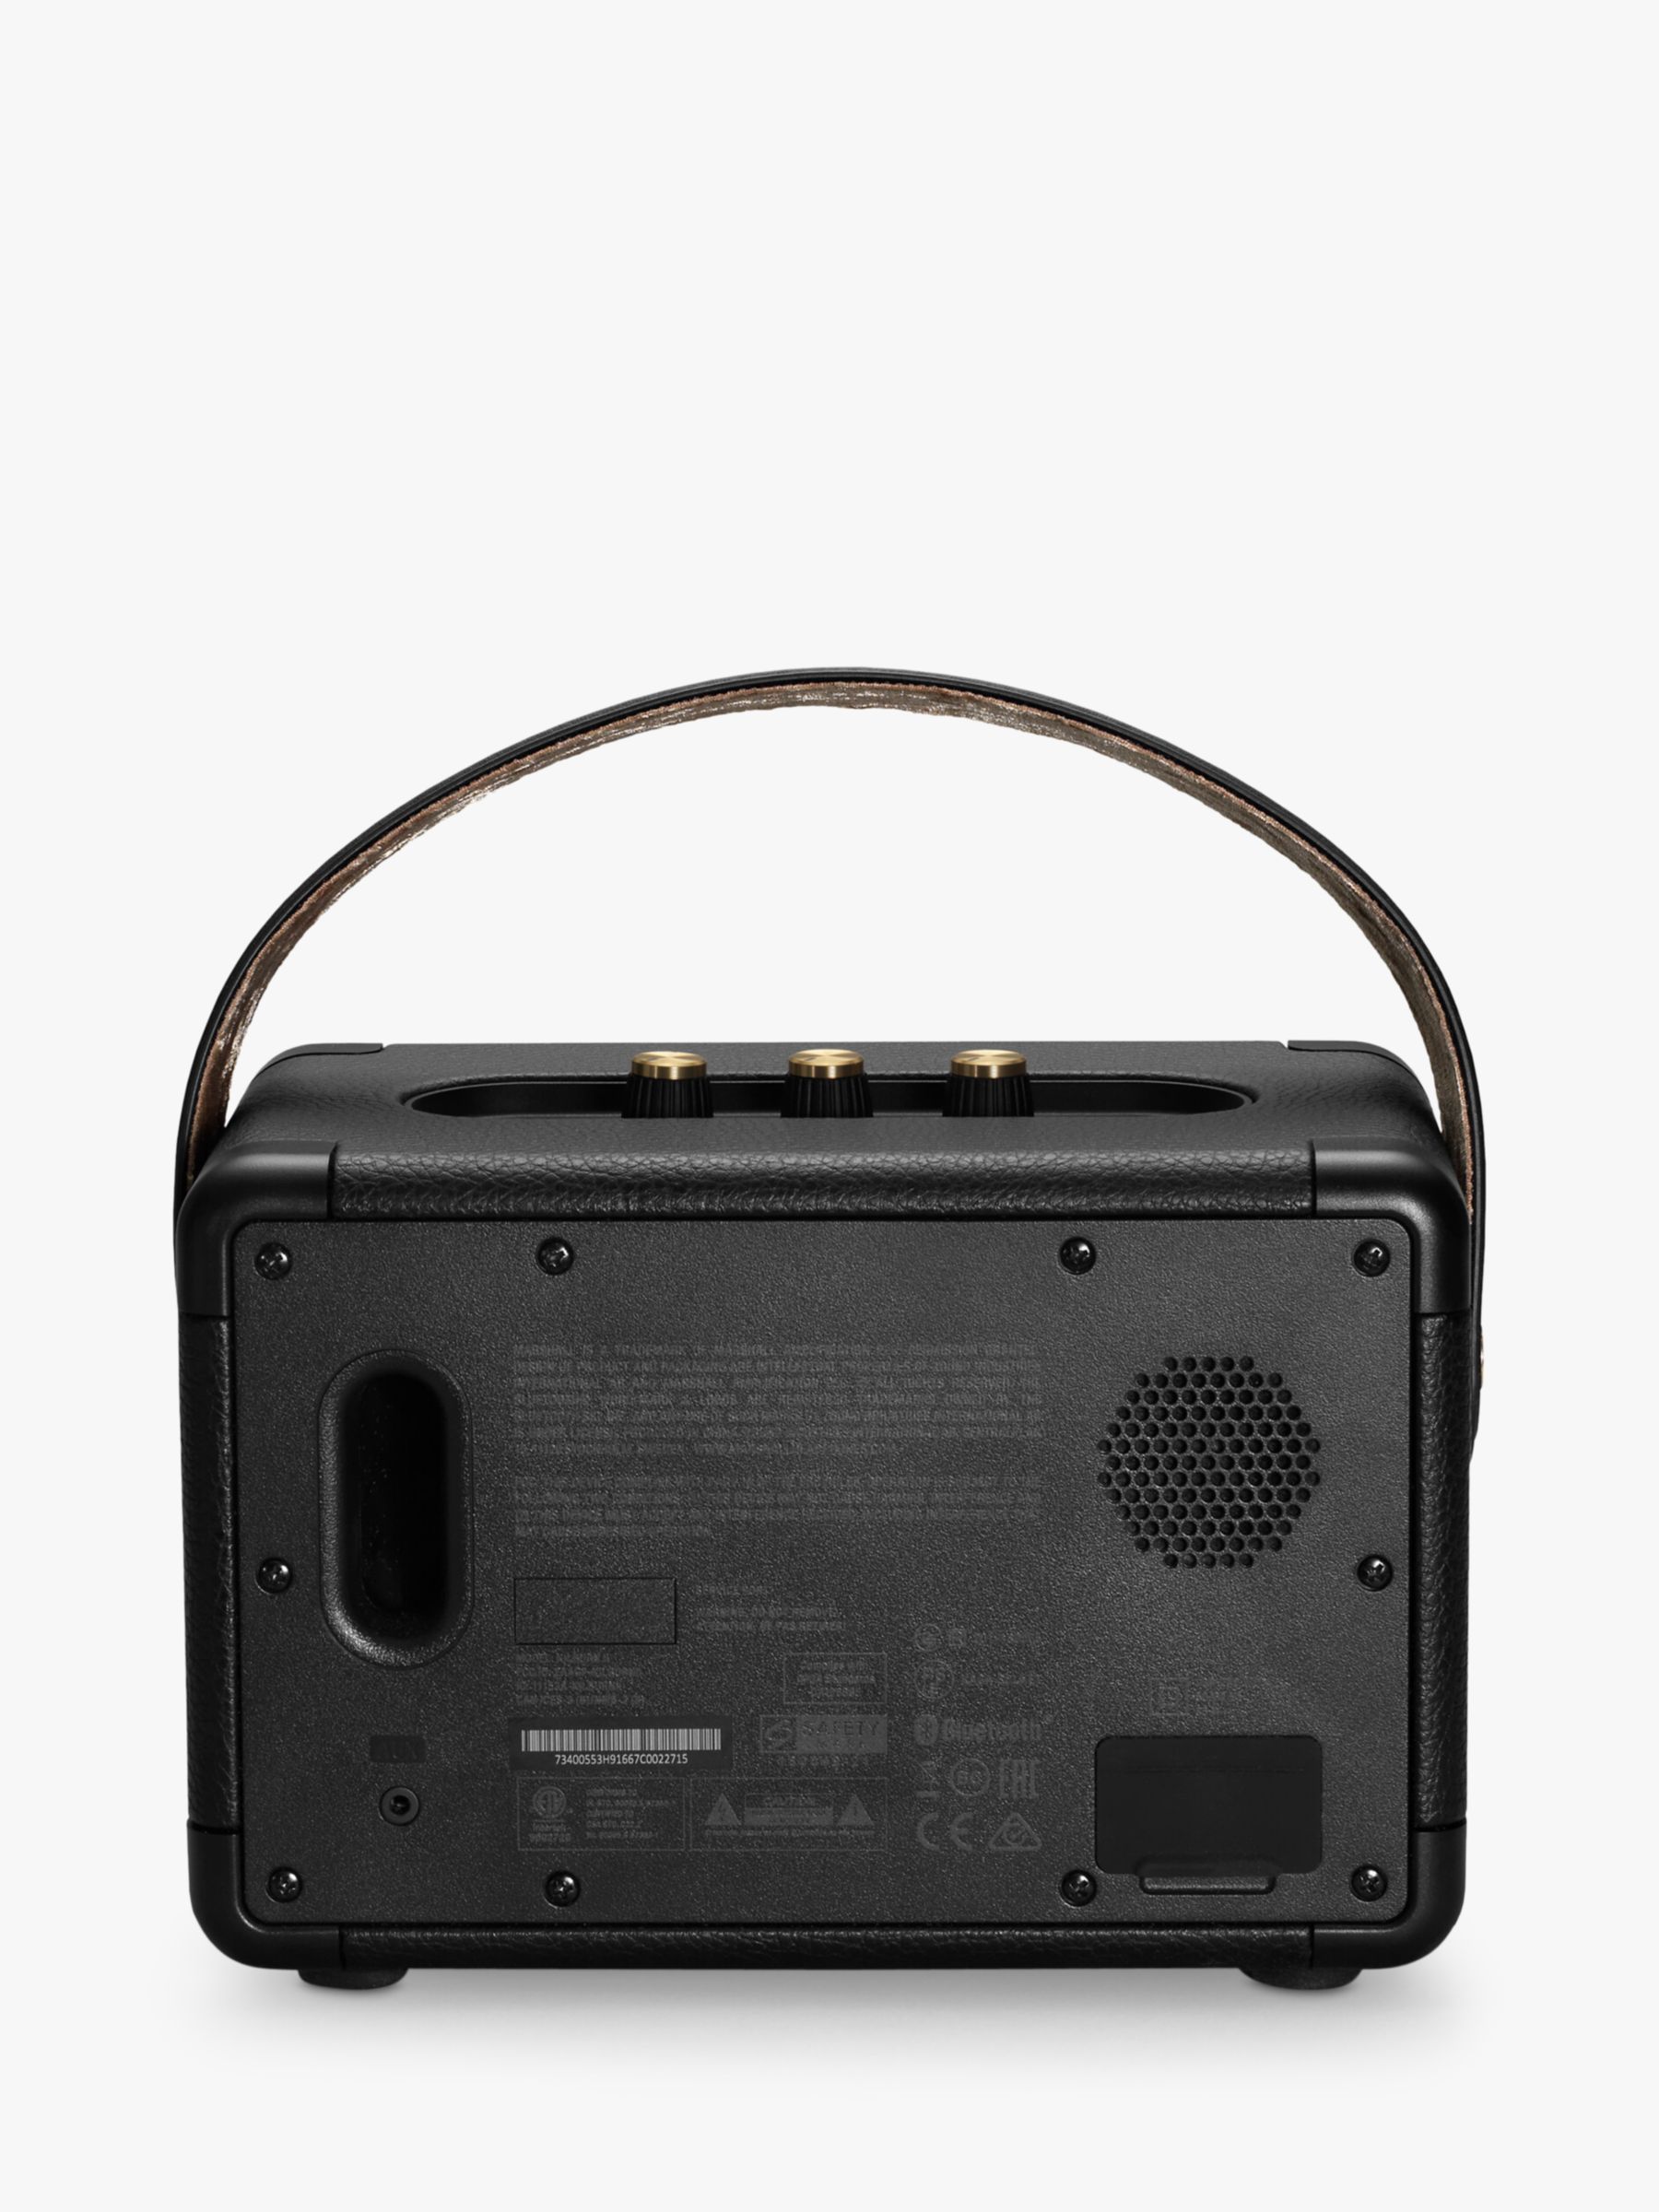 Marshall Kilburn II Portable Bluetooth Speaker, Black & Brass